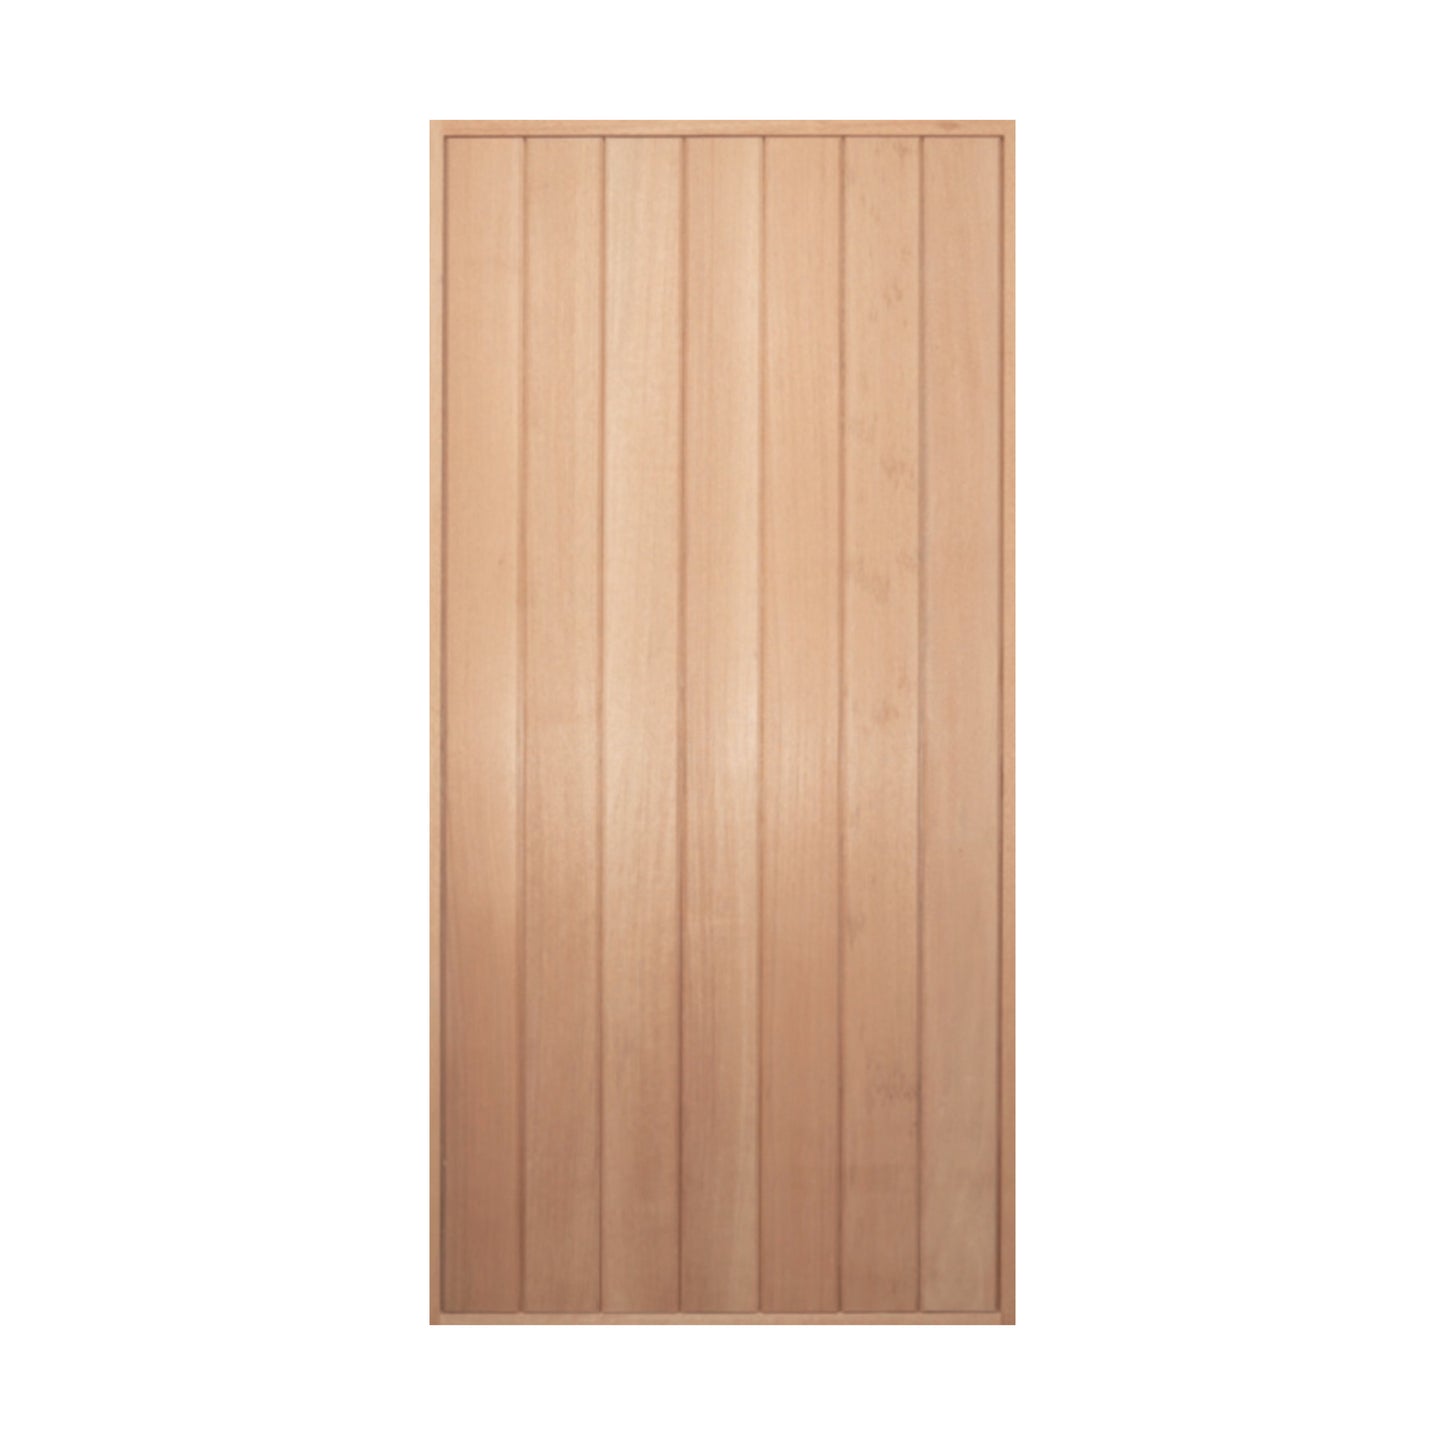 FS-MV Solid Vertical plank Door & Frame Package